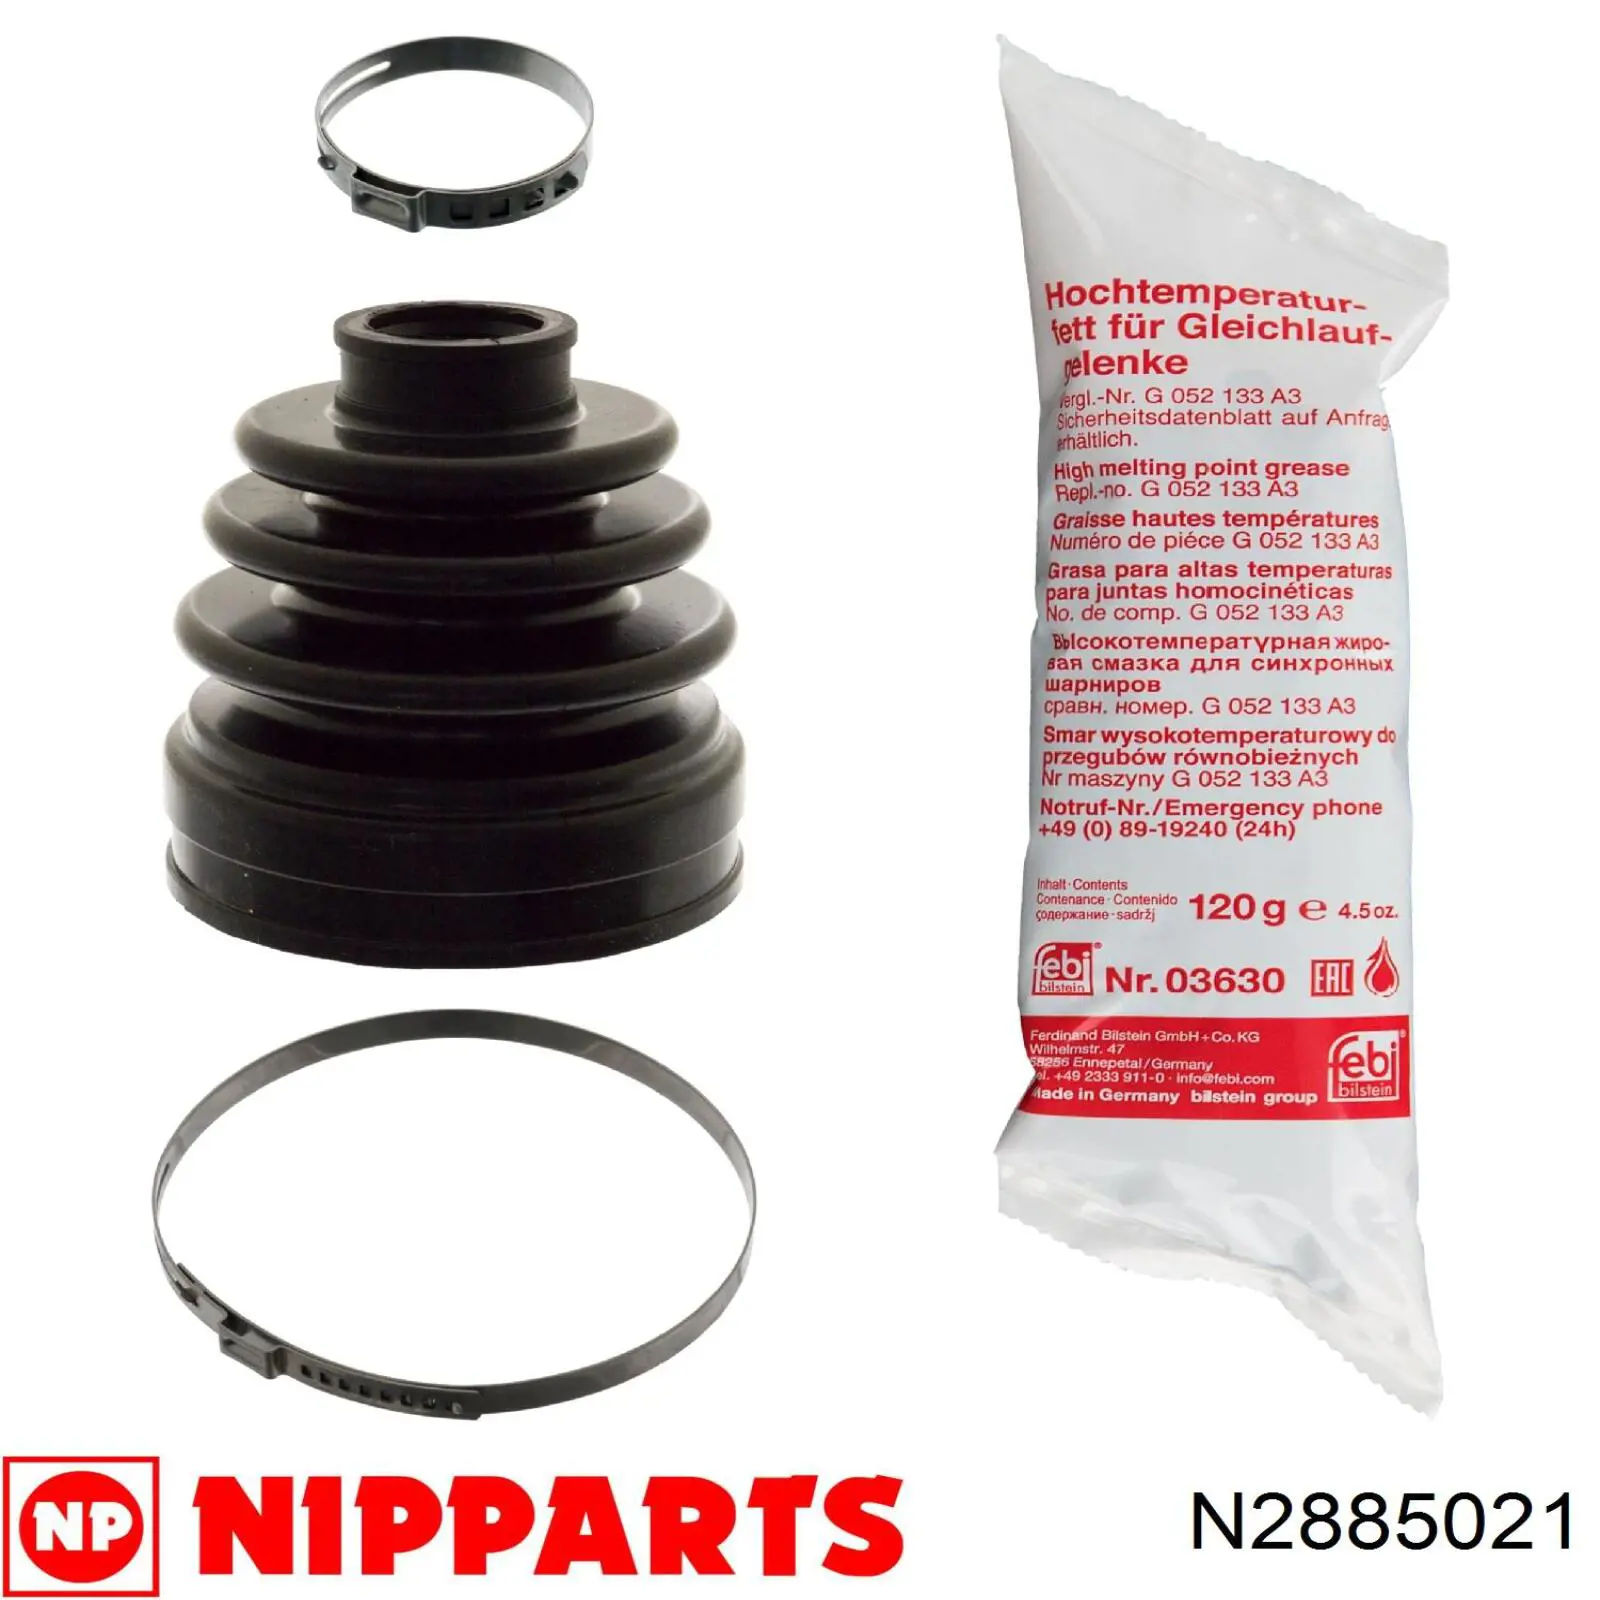 N2885021 Nipparts fuelle, árbol de transmisión delantero interior